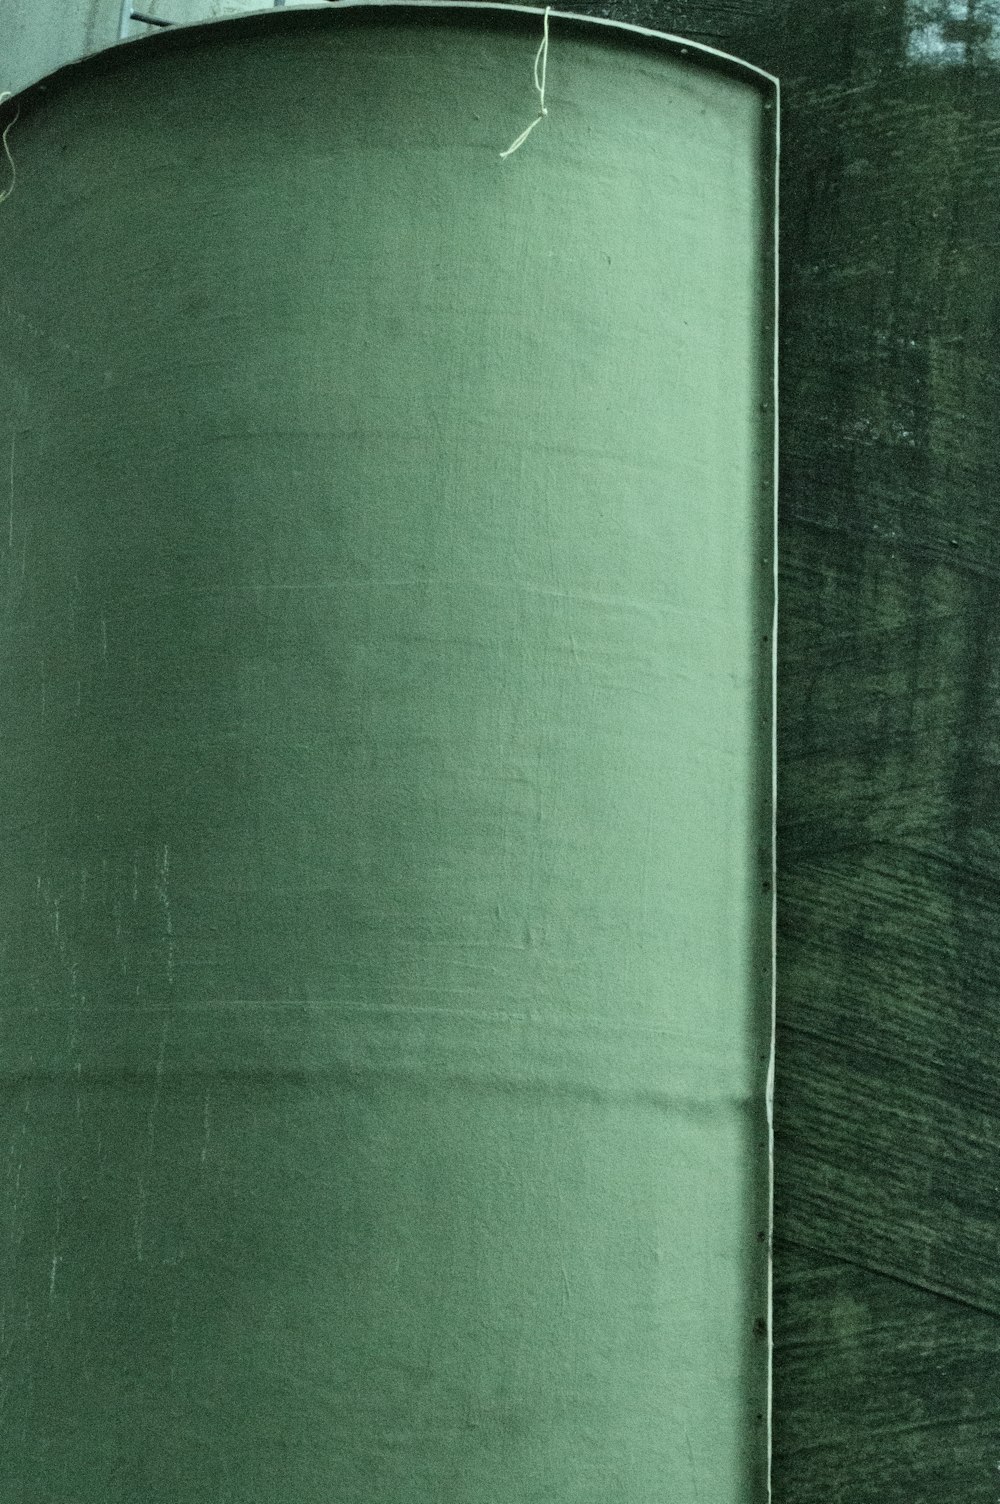 textil verde sobre mesa de madera marrón